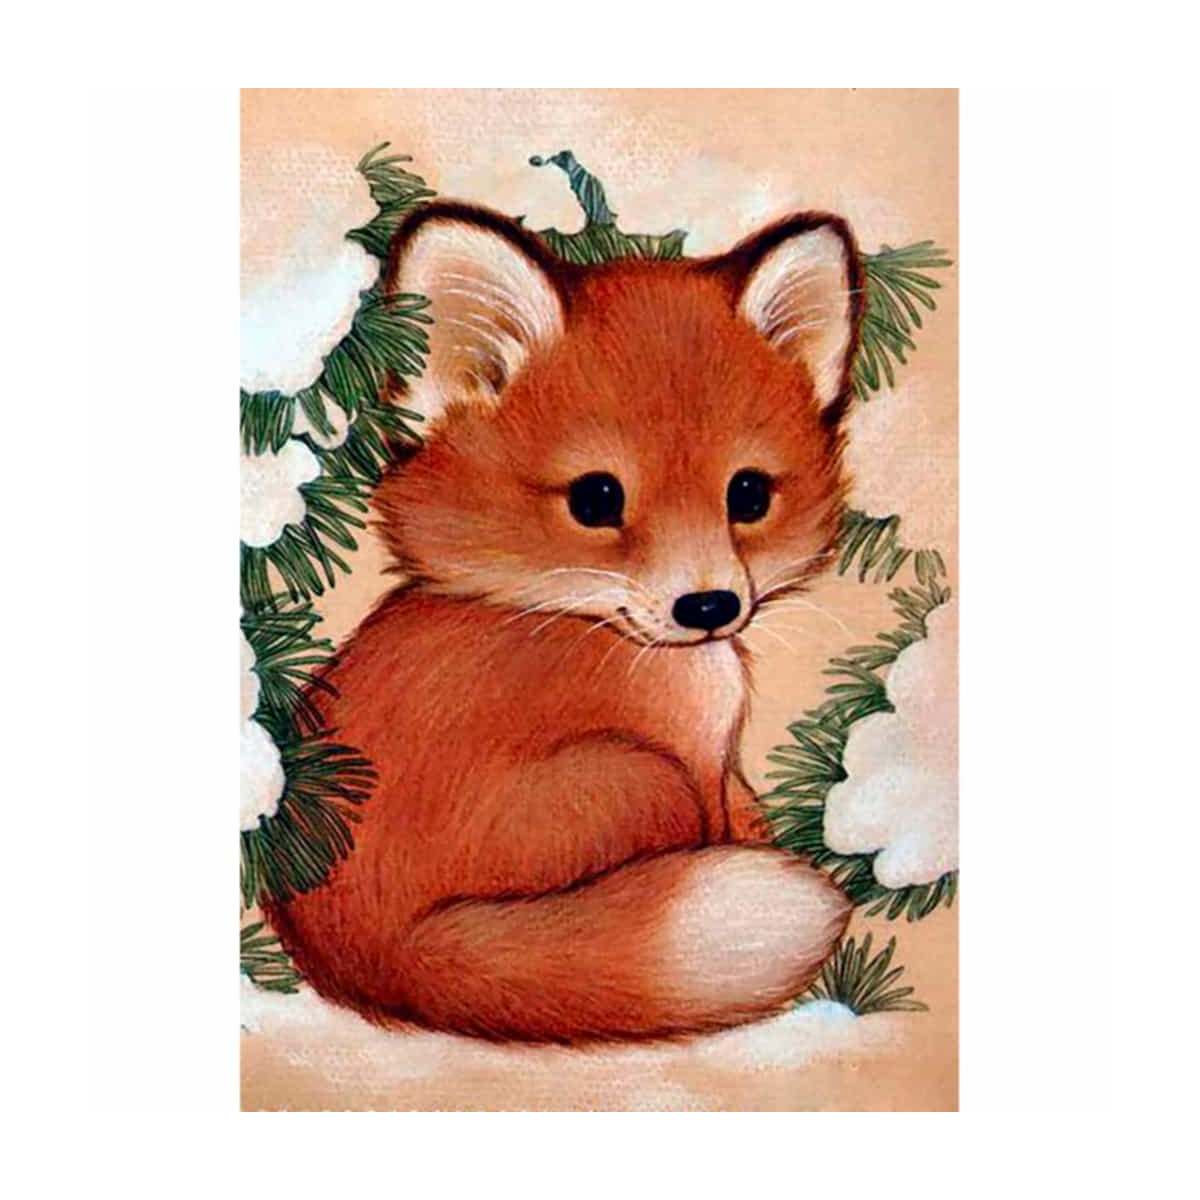 CdA serti de peinture en diamant "fox puppy" 19...